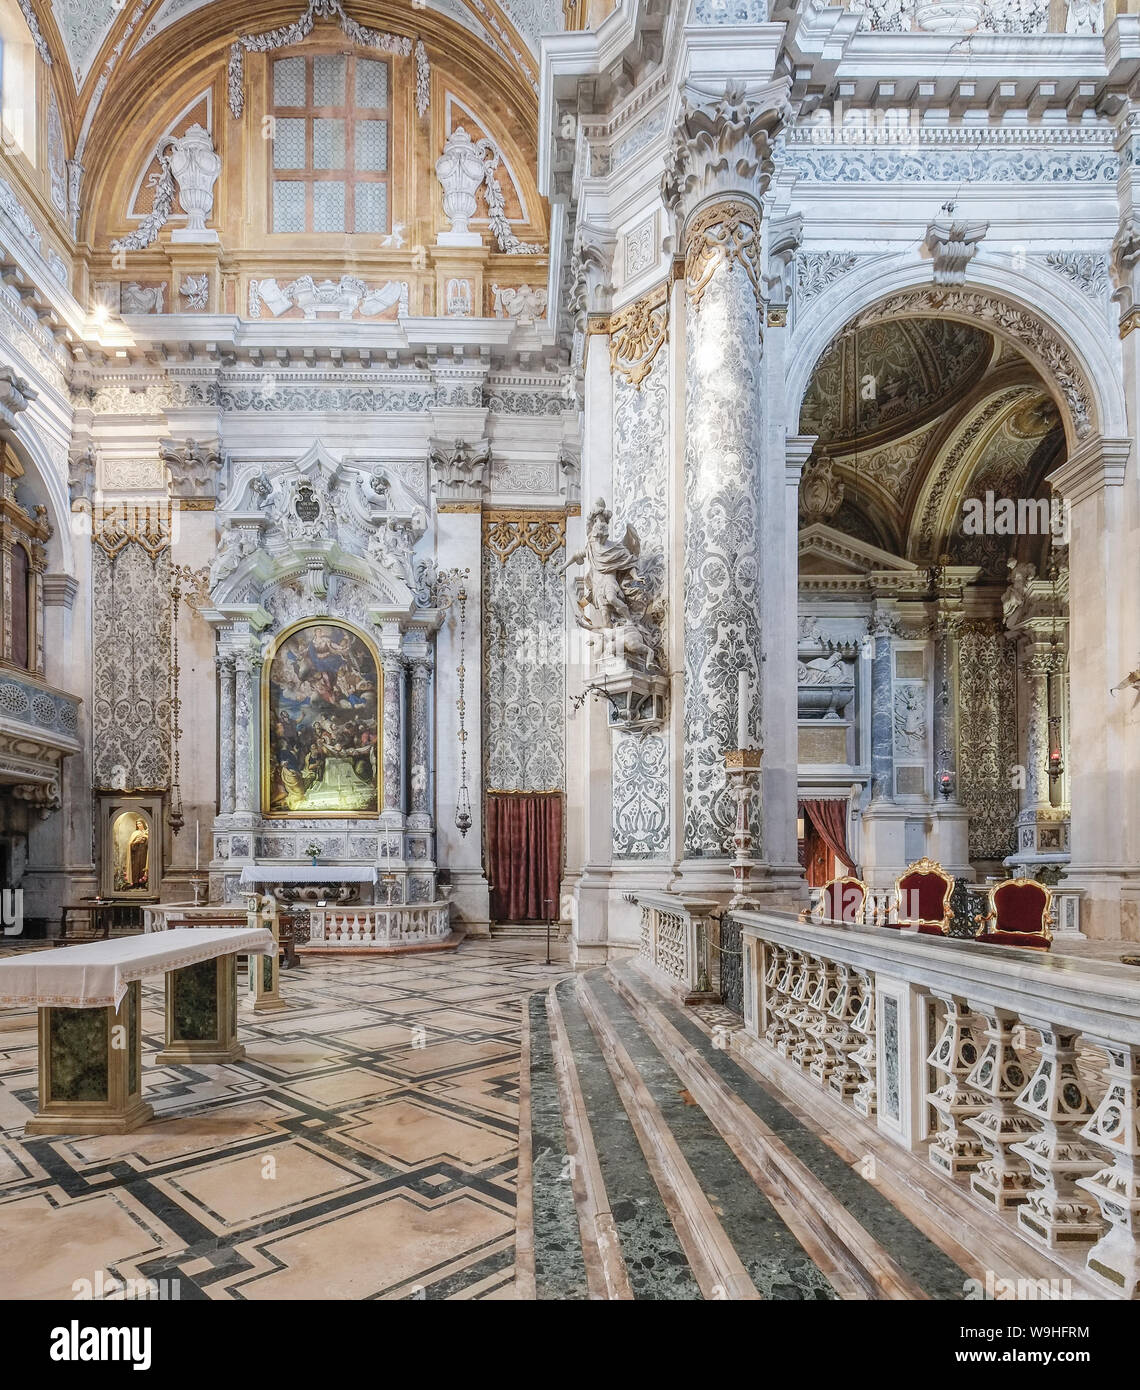 La iglesia de Santa Maria Assunta, conocido como 'I Gesuiti', en Venecia. Foto de stock